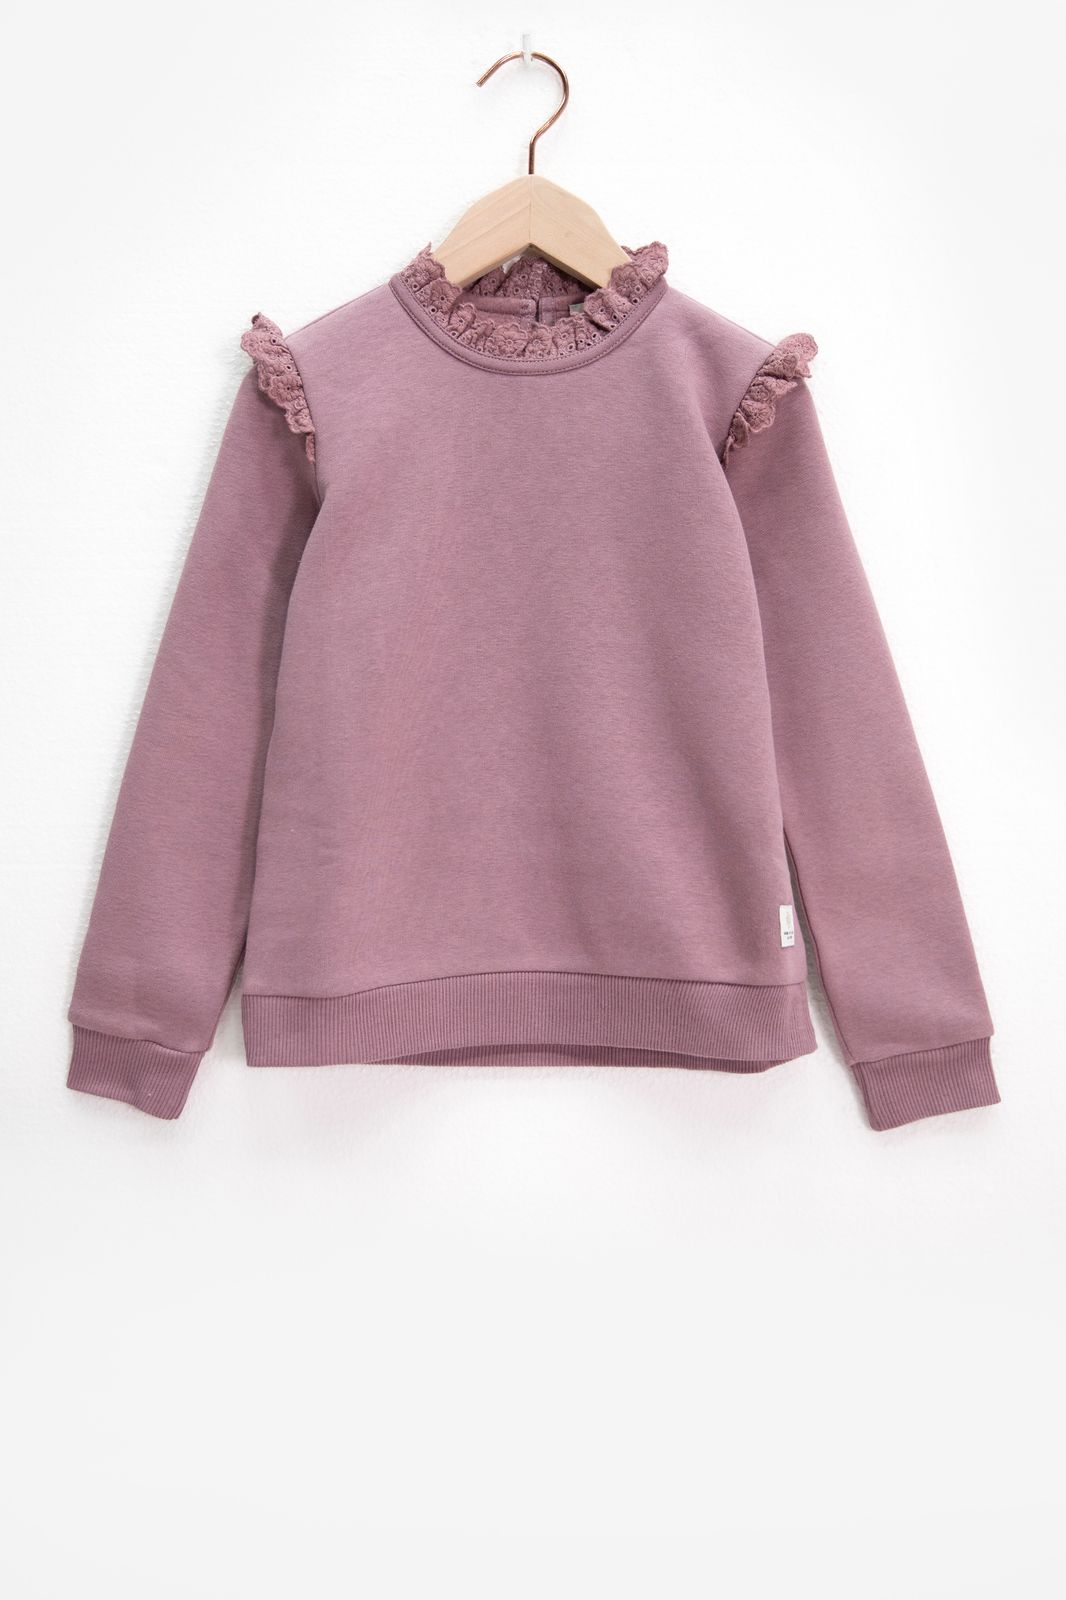 Sweater mit Rüschen und Anglaise-Details - lila